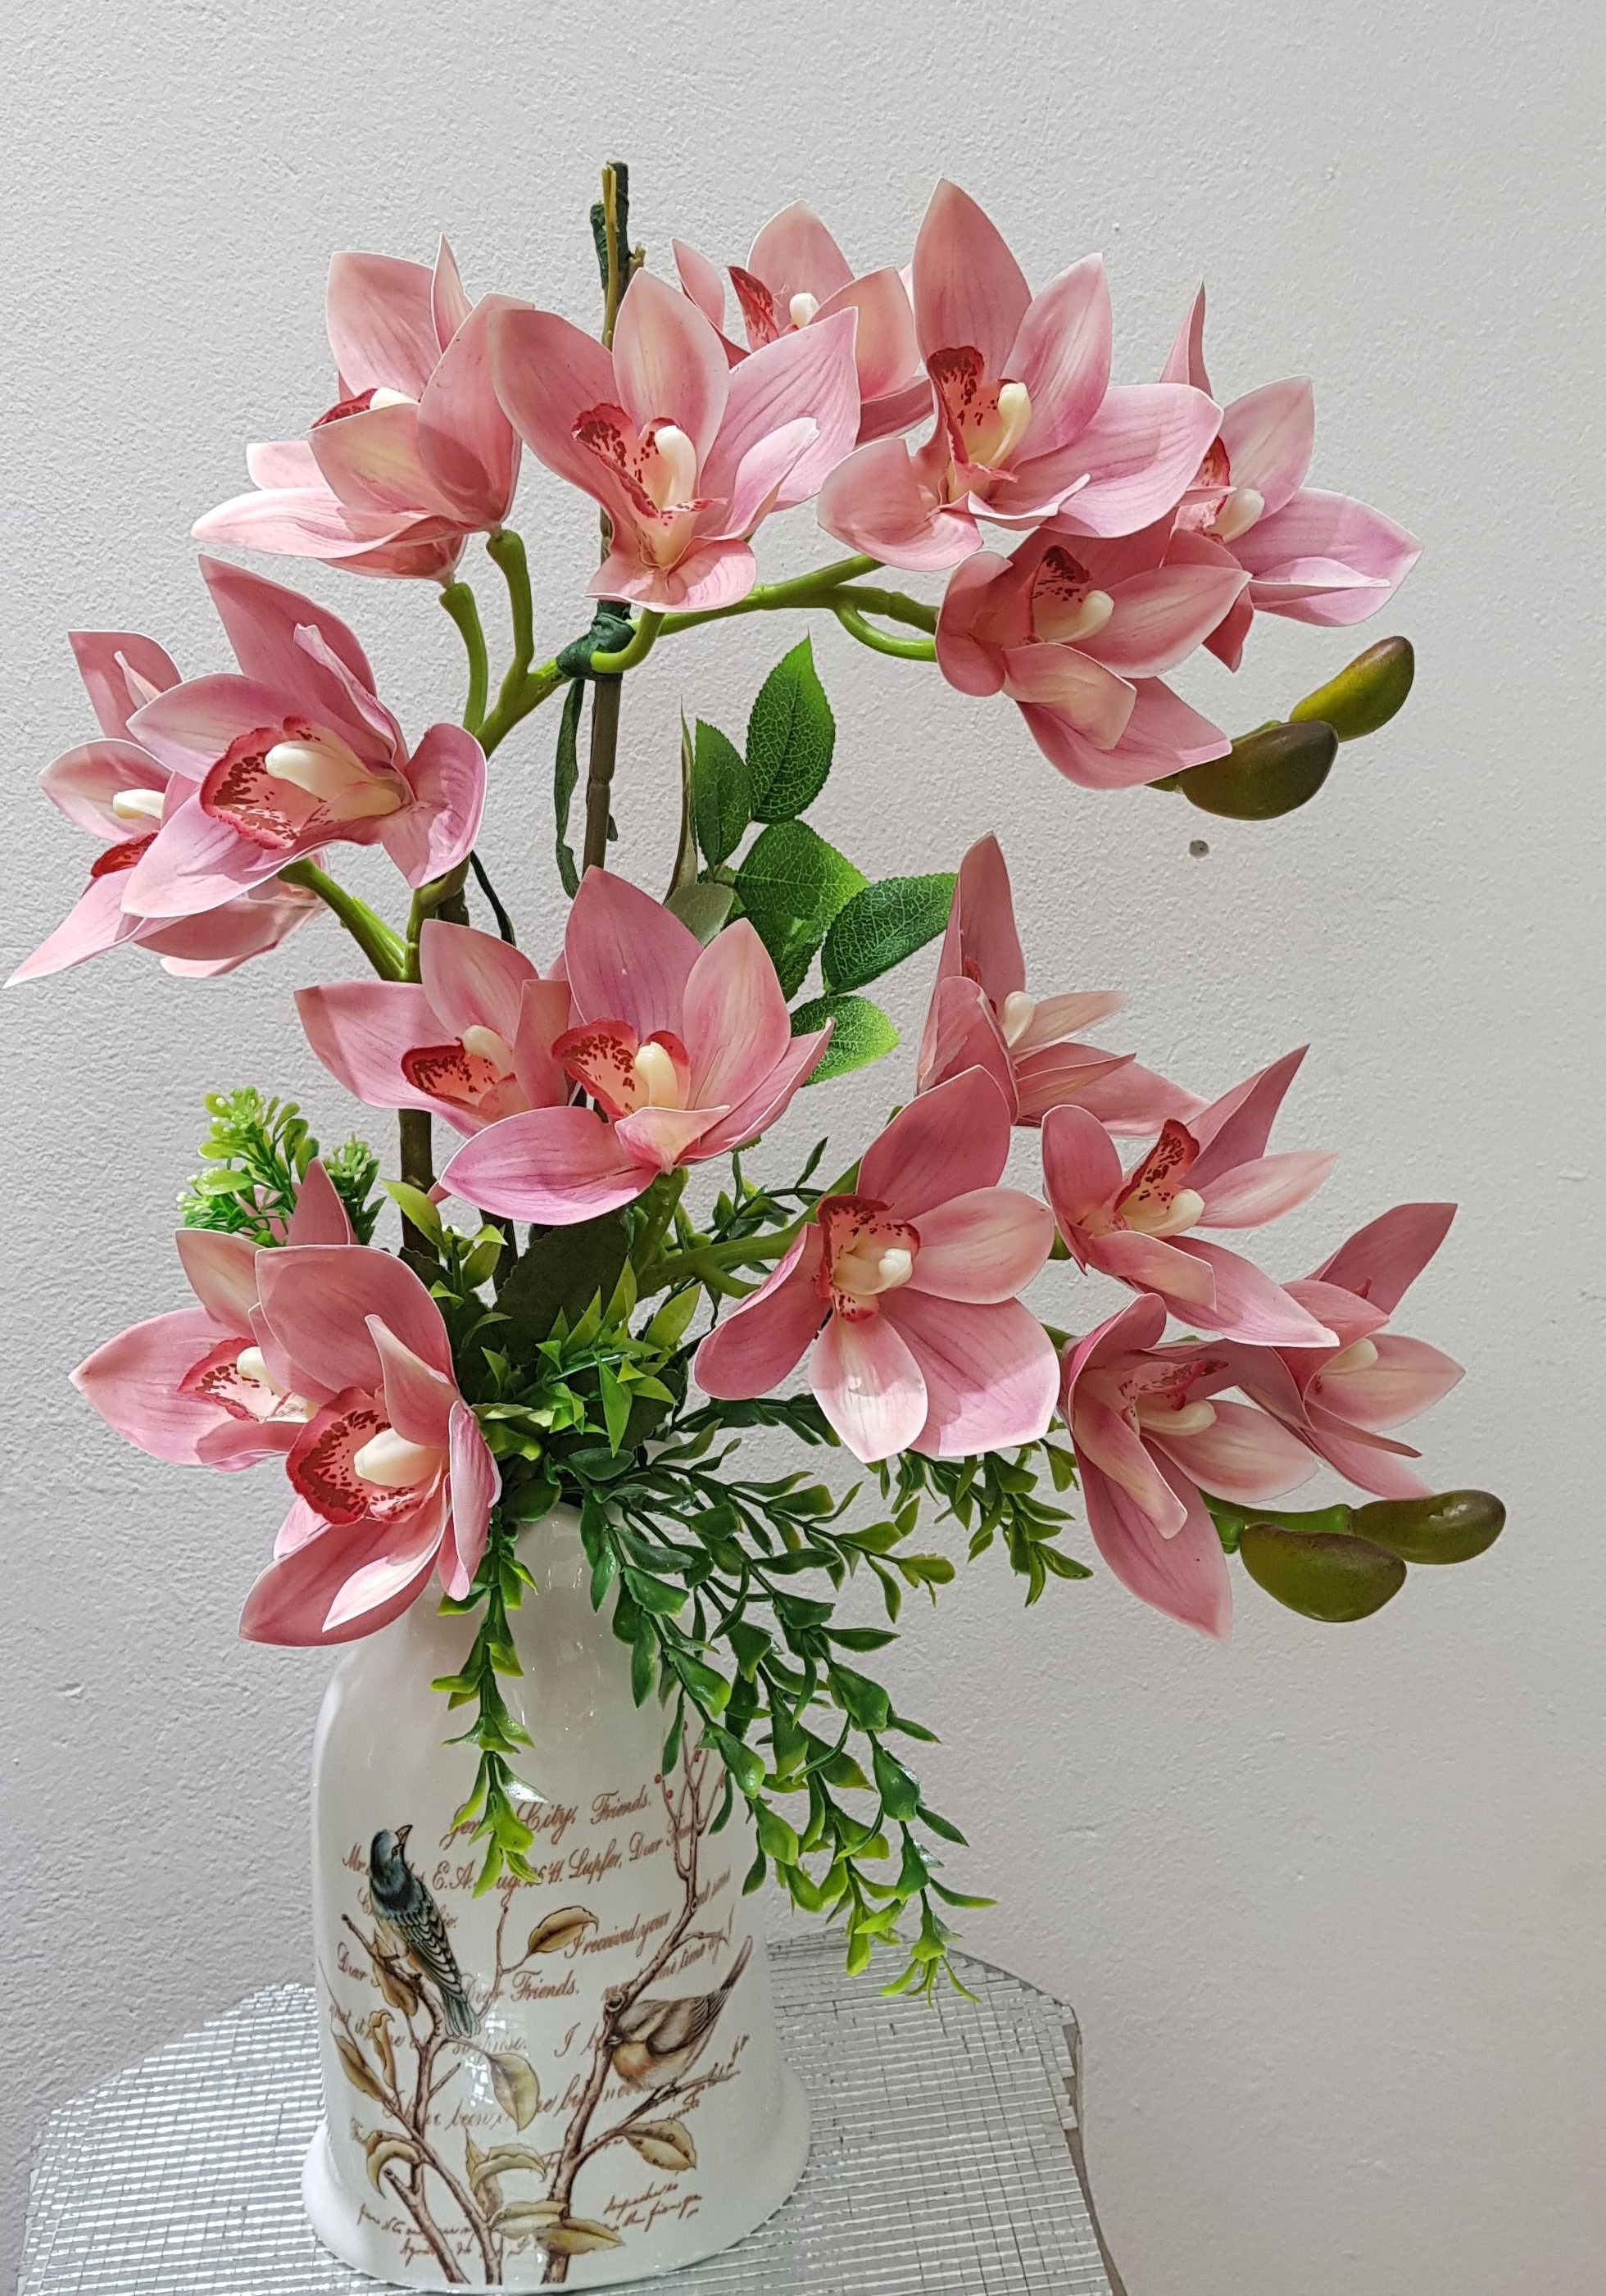 HOA LỤA VÀ HOA ĐỊA LAN HỒNG: Rực rỡ sắc màu và thời gian sử dụng lâu dài là những điều mà những bông hoa lụa và hoa địa lan hồng đem lại. Đây là sản phẩm hoàn hảo để trang trí không gian phòng khách hay phòng làm việc của bạn. Hãy để mỗi sản phẩm hoa lụa và hoa địa lan hồng mang đến cho bạn cảm giác thật sự thư giãn và hạnh phúc.